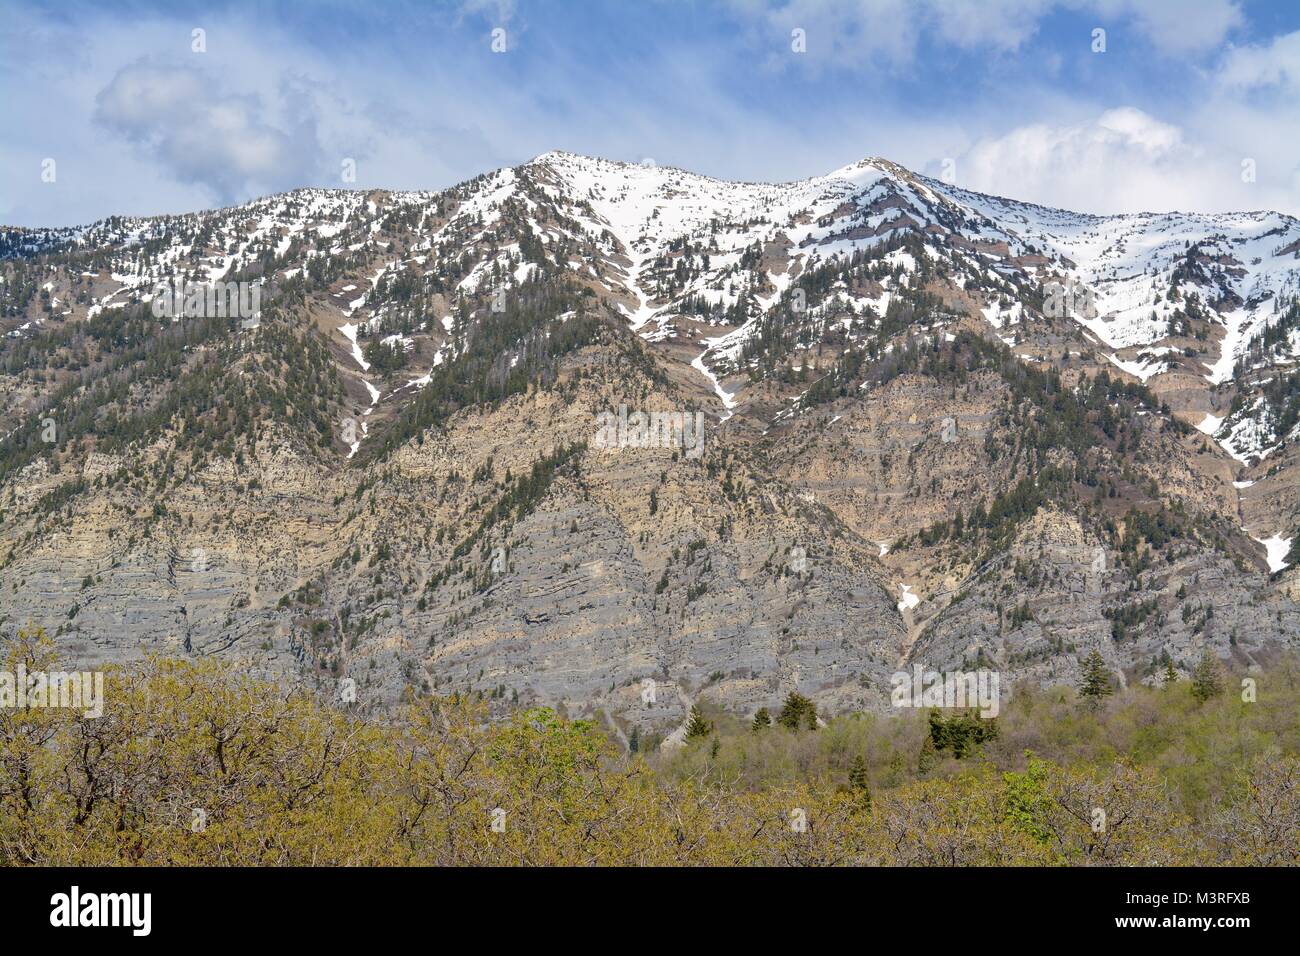 Mountains in Provo, Utah Stock Photo